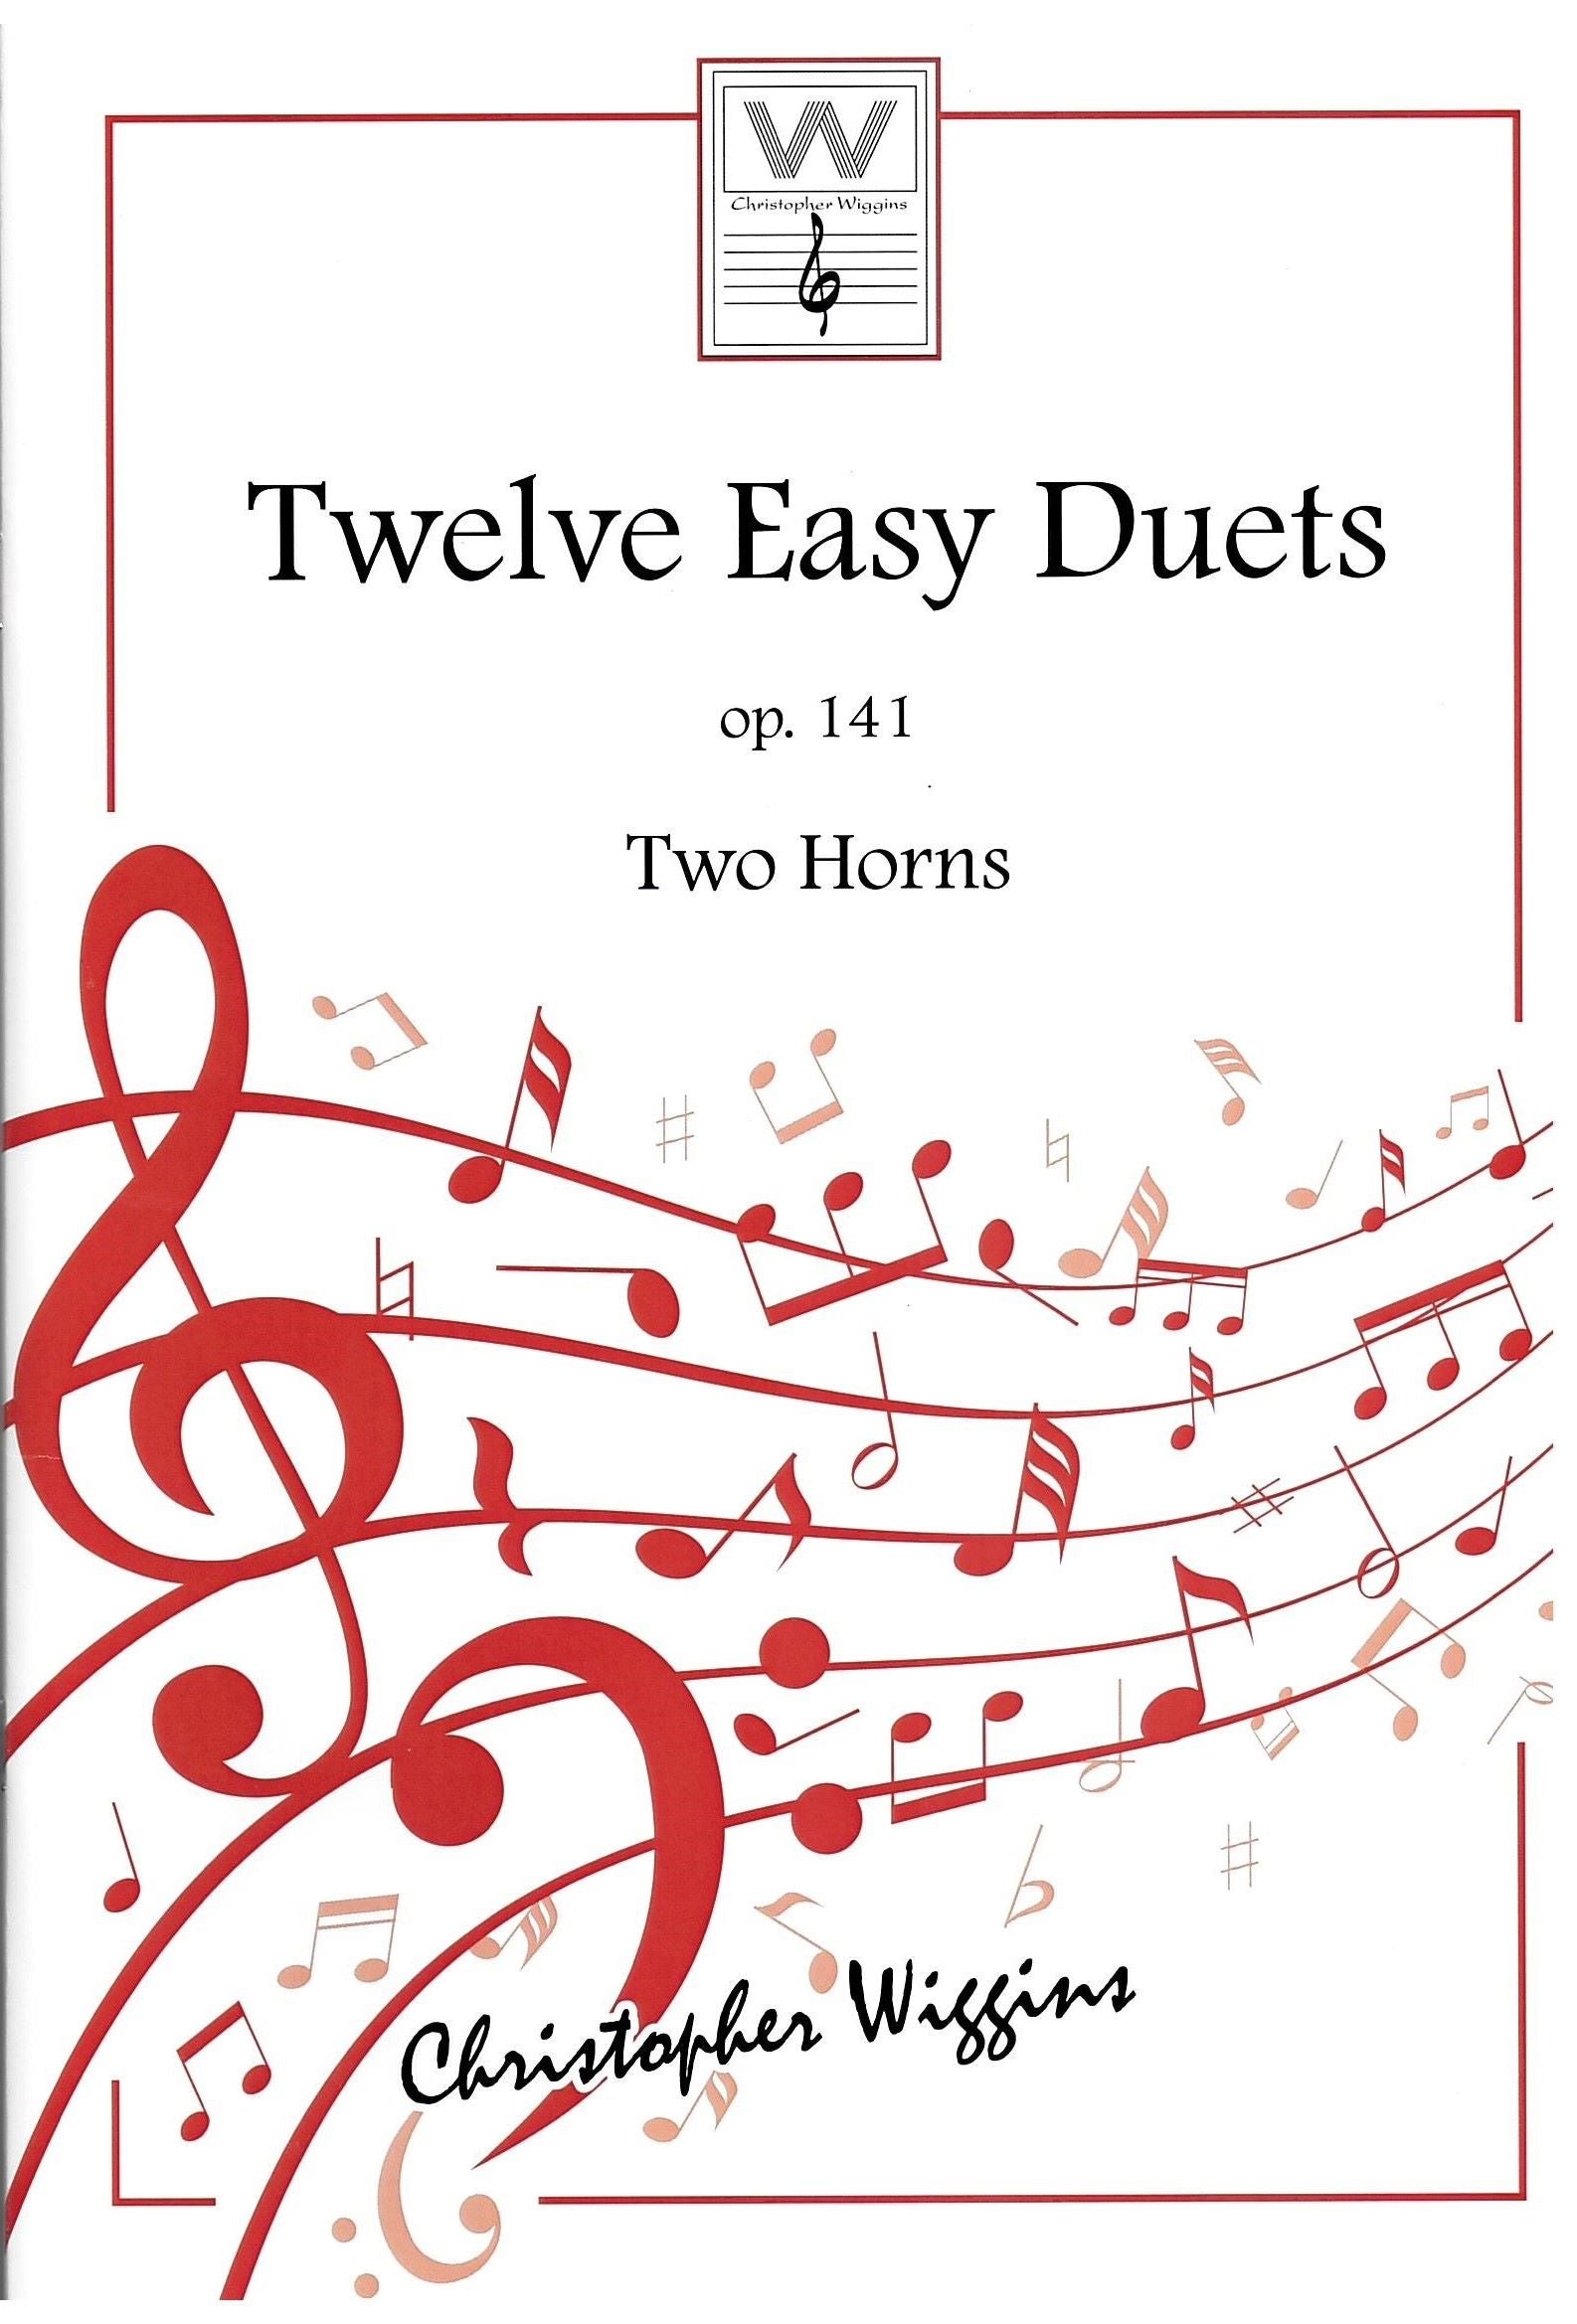 Twelve easy Duets op.141 for 2 horns